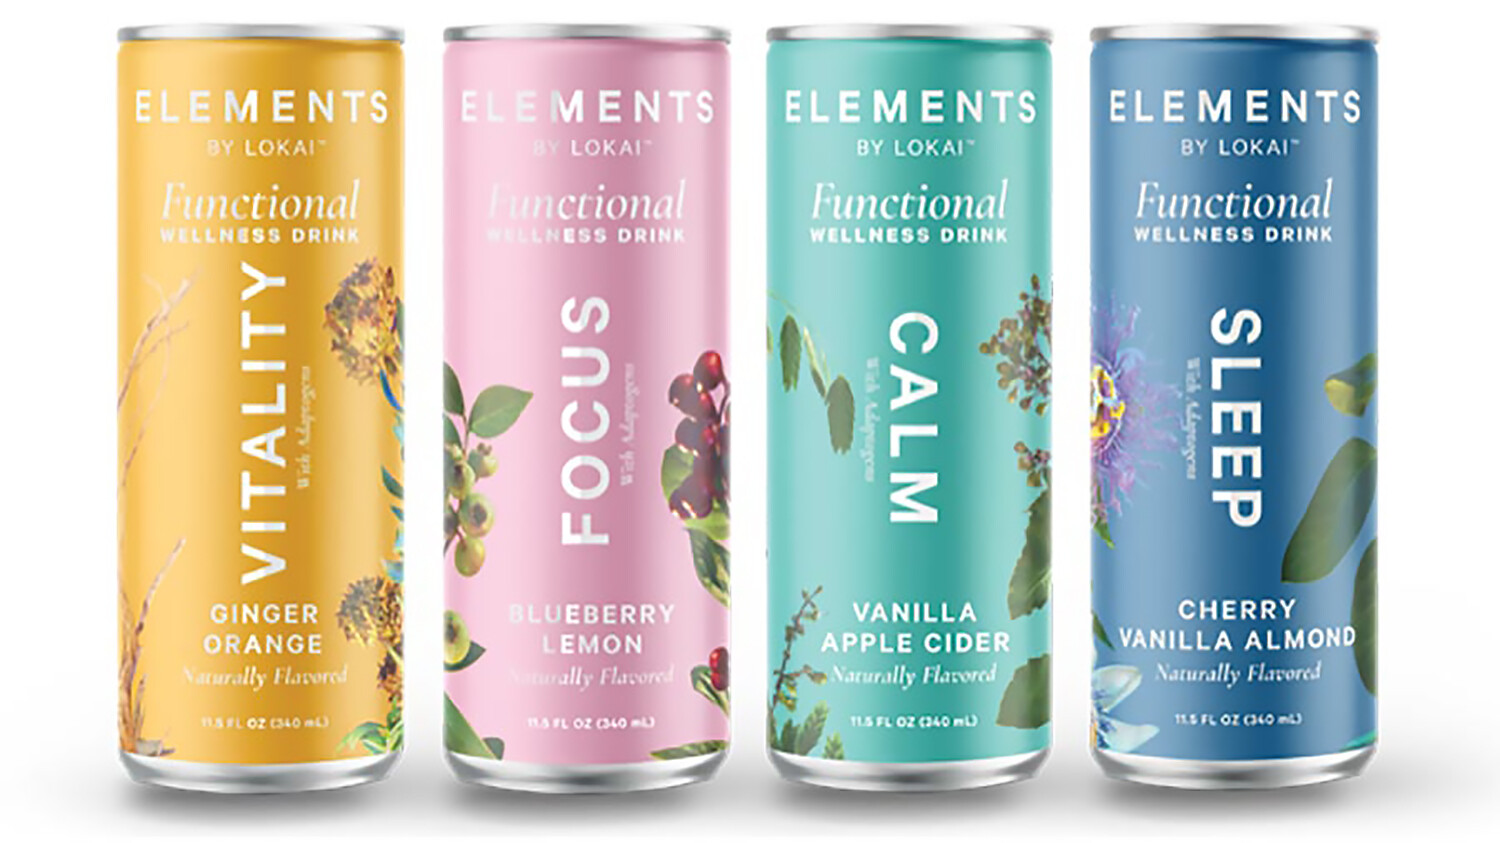 品牌 Elements 主打適應原概念，推出幫助睡眠、提升活力及舒緩壓力等訴求的機能飲品